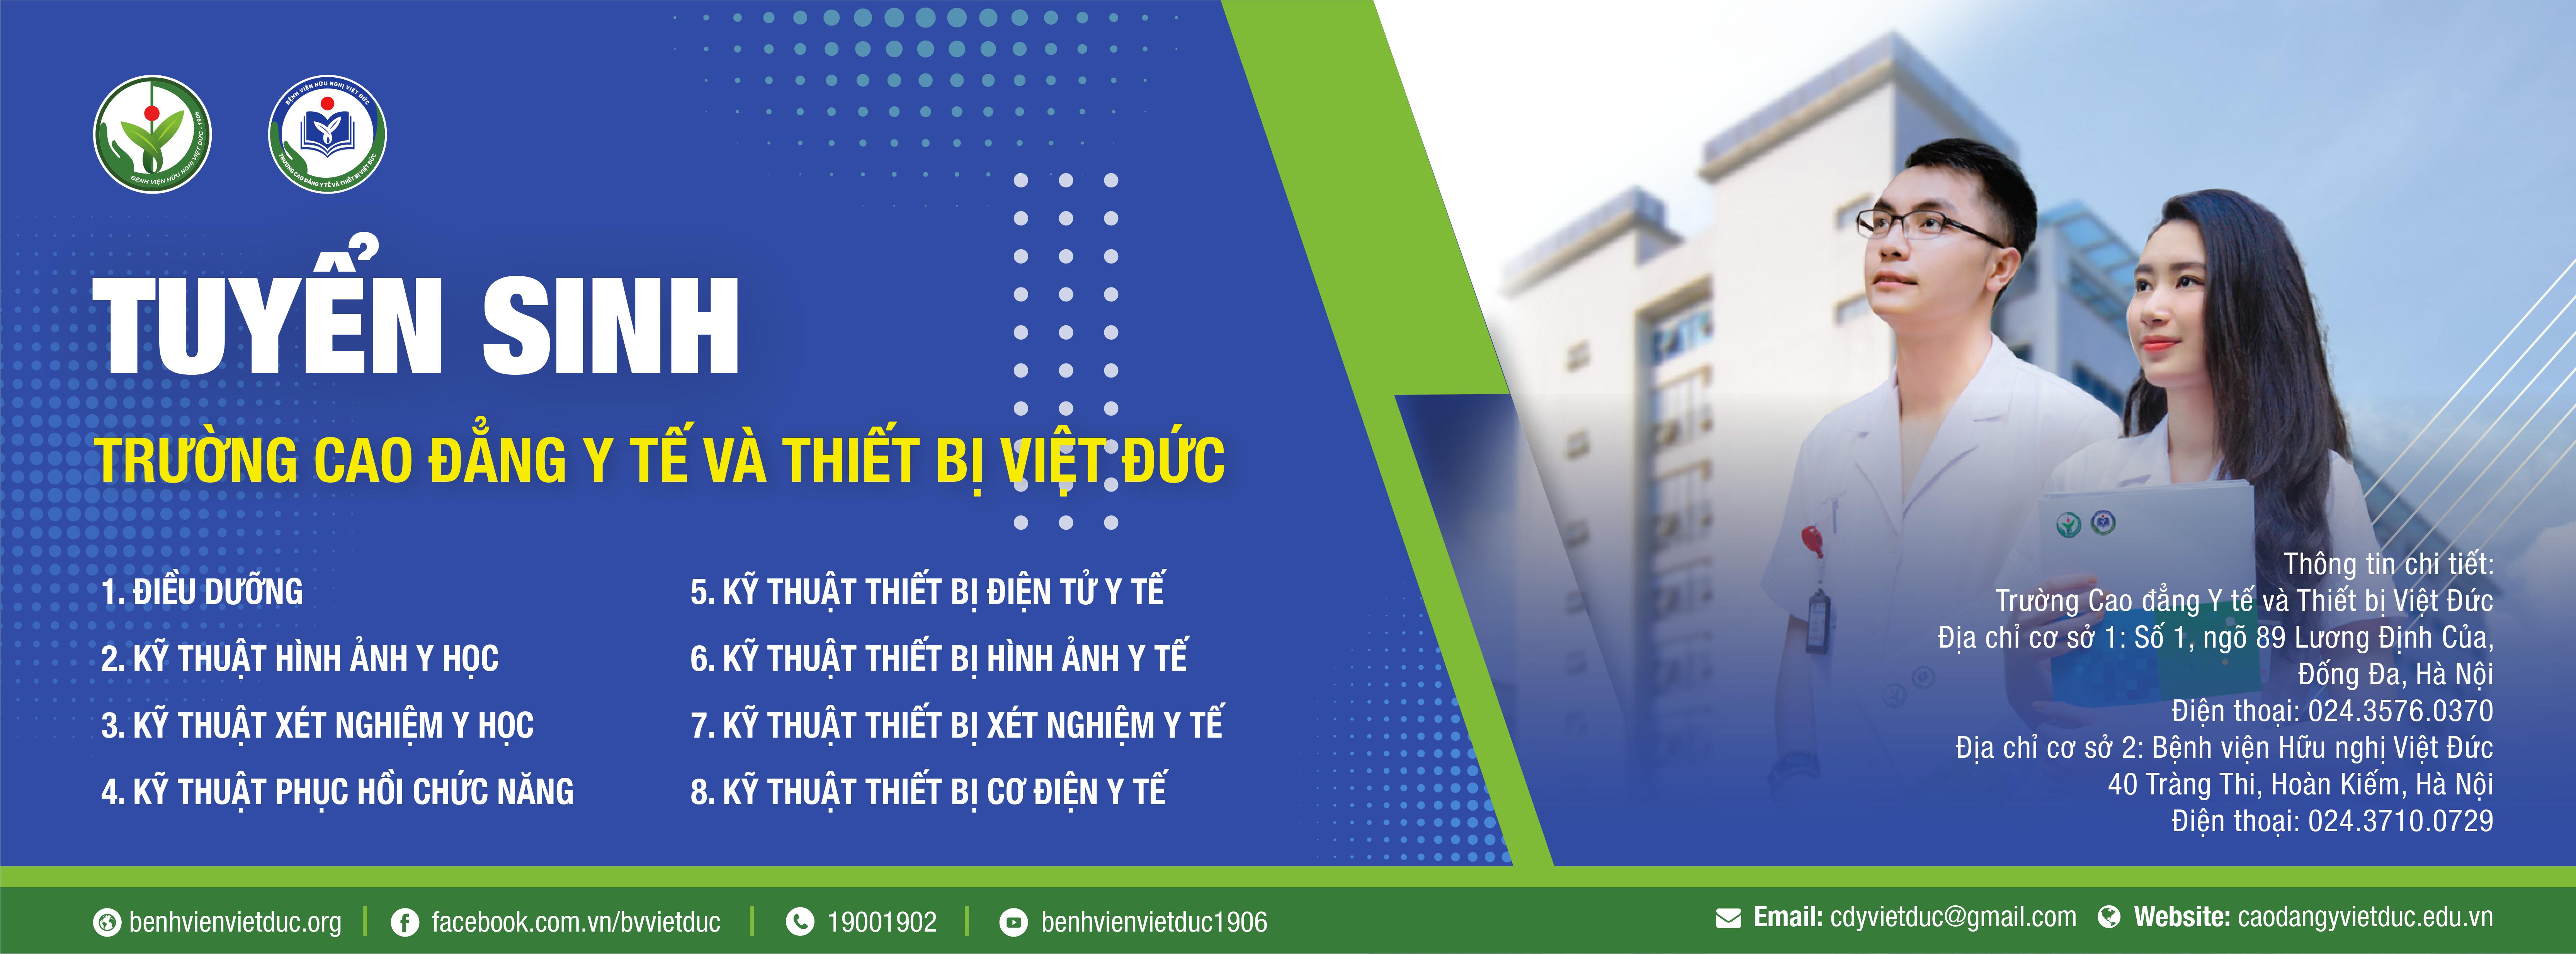 Bệnh viện Việt Đức nổi tiếng với dịch vụ y tế chất lượng cao và đội ngũ y bác sĩ tận tình. Hãy xem hình ảnh liên quan để khám phá cơ sở vật chất tốt và tiện nghi của bệnh viện.